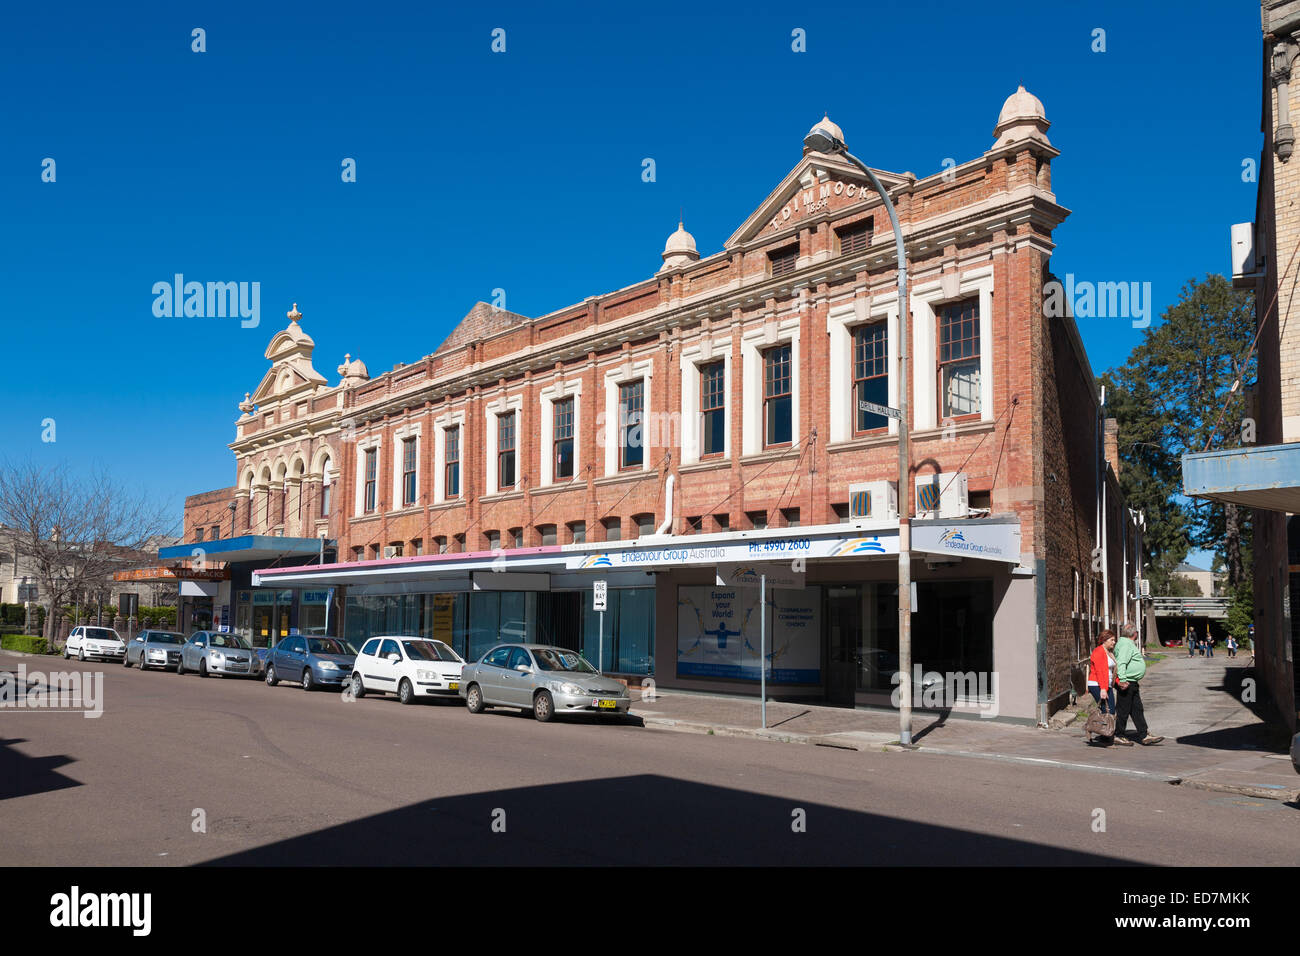 Prominente historische architektonische empfohlene Geschäftshaus in Maitland im Hunter Valley NSW Australien Stockfoto